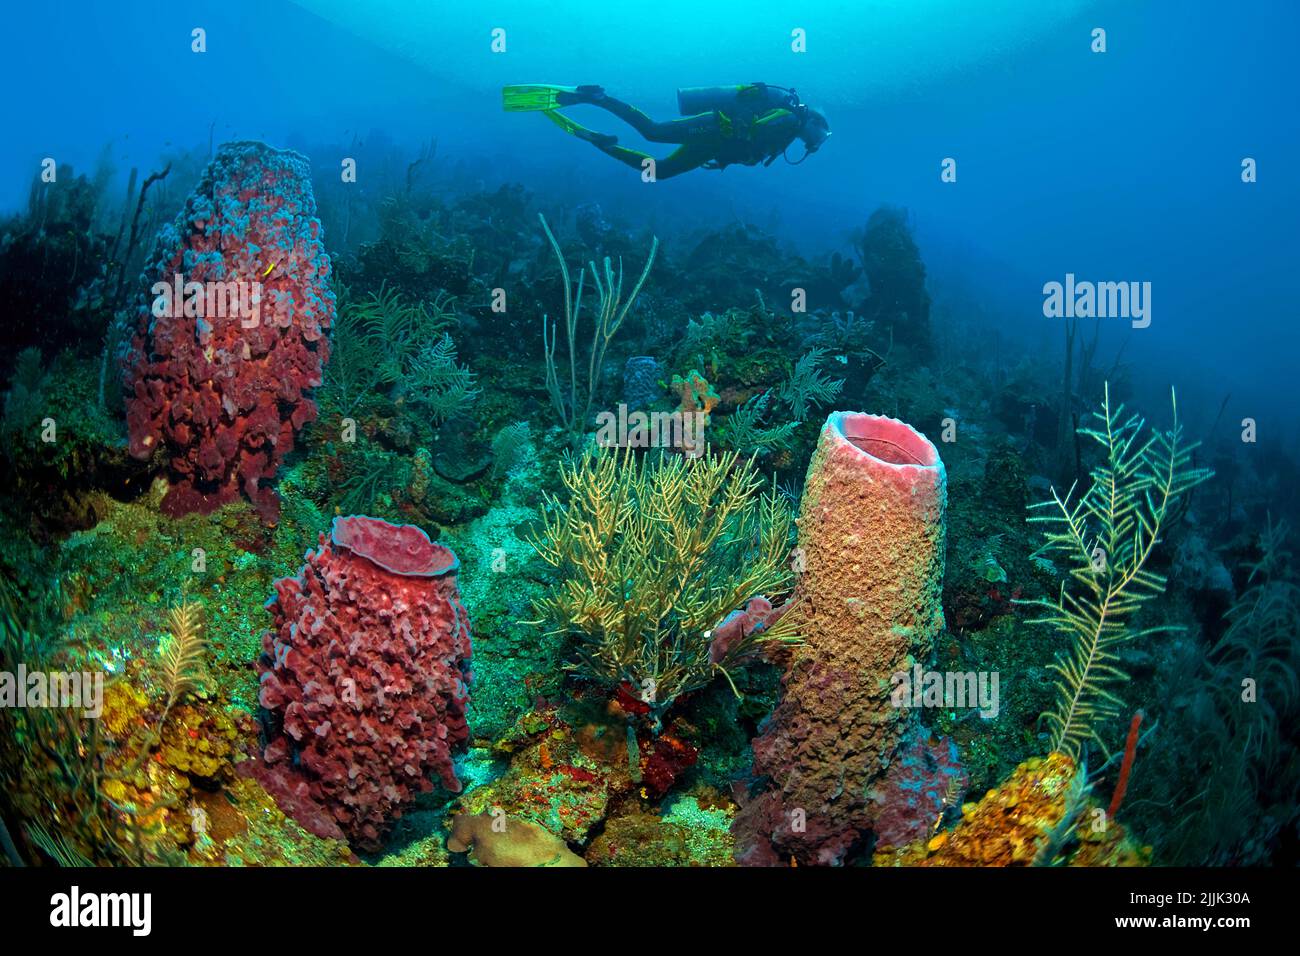 Plongée sous-marine dans des éponges géantes de barrel (Xestospongia testudinaria) dans un récif de corail des caraïbes, Roatan, Bay Islands, Honduras, Caraïbes Banque D'Images